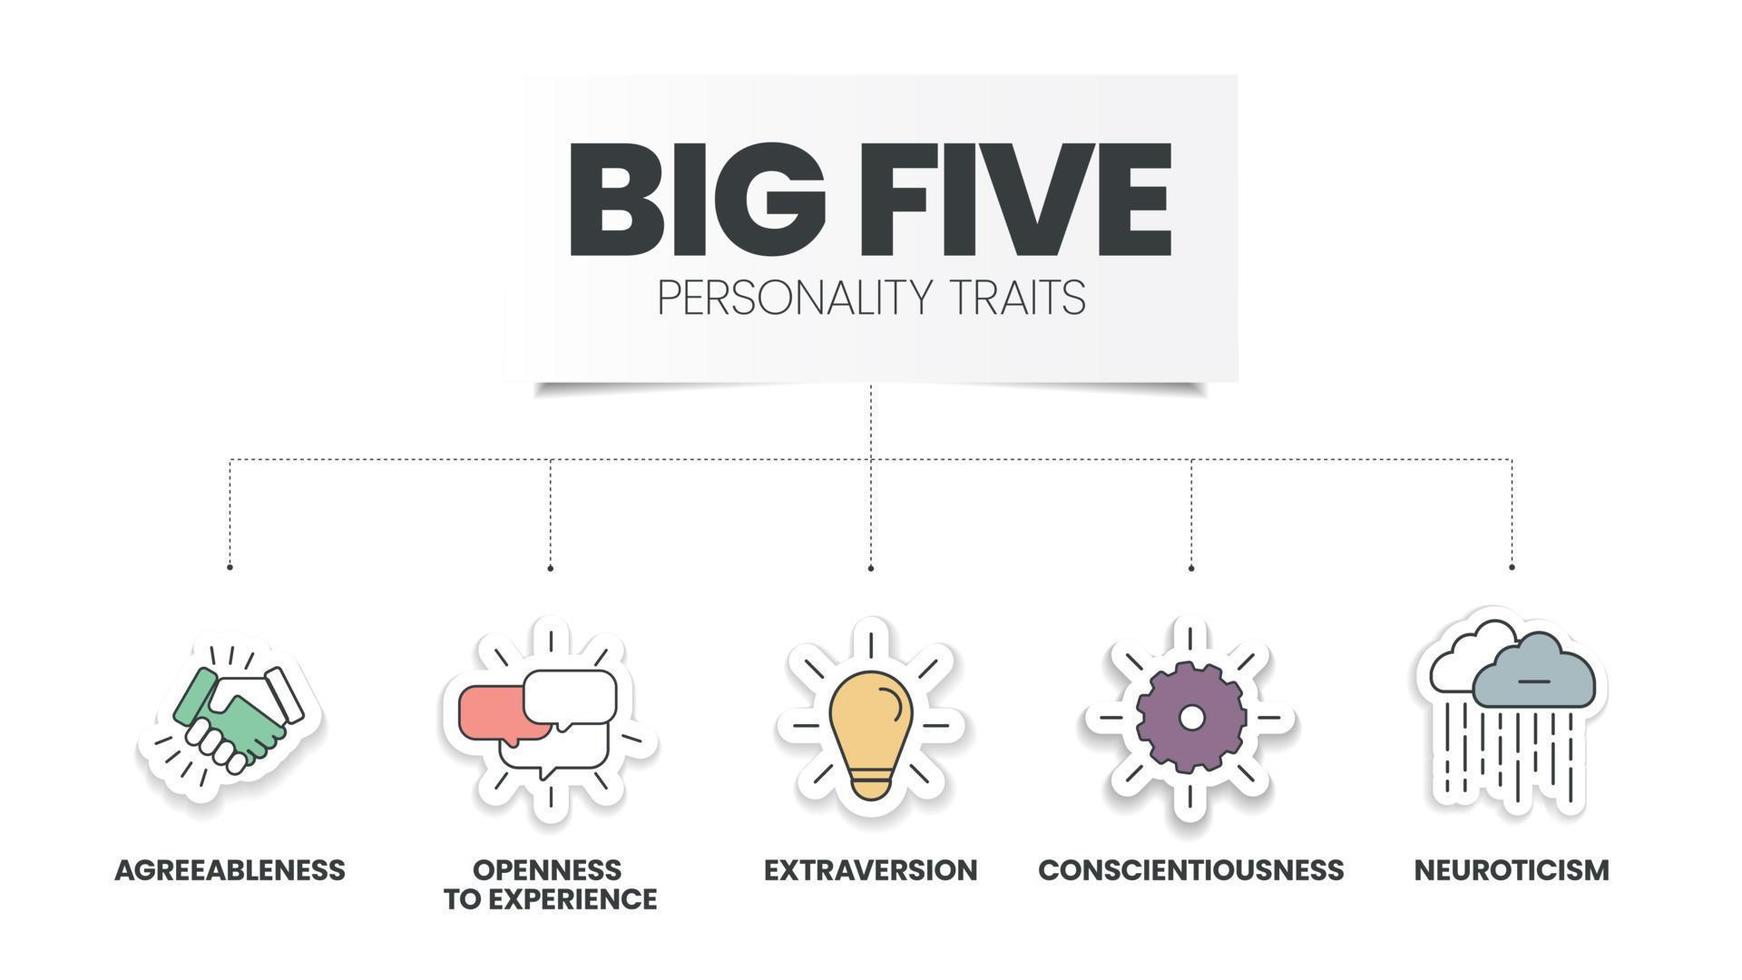 L'infographie des cinq grands traits de personnalité a 4 types de personnalité tels que l'agréabilité, l'ouverture à l'expérience, le névrosisme, la conscience et l'extraversion. vecteur de présentation de diapositives visuelles.